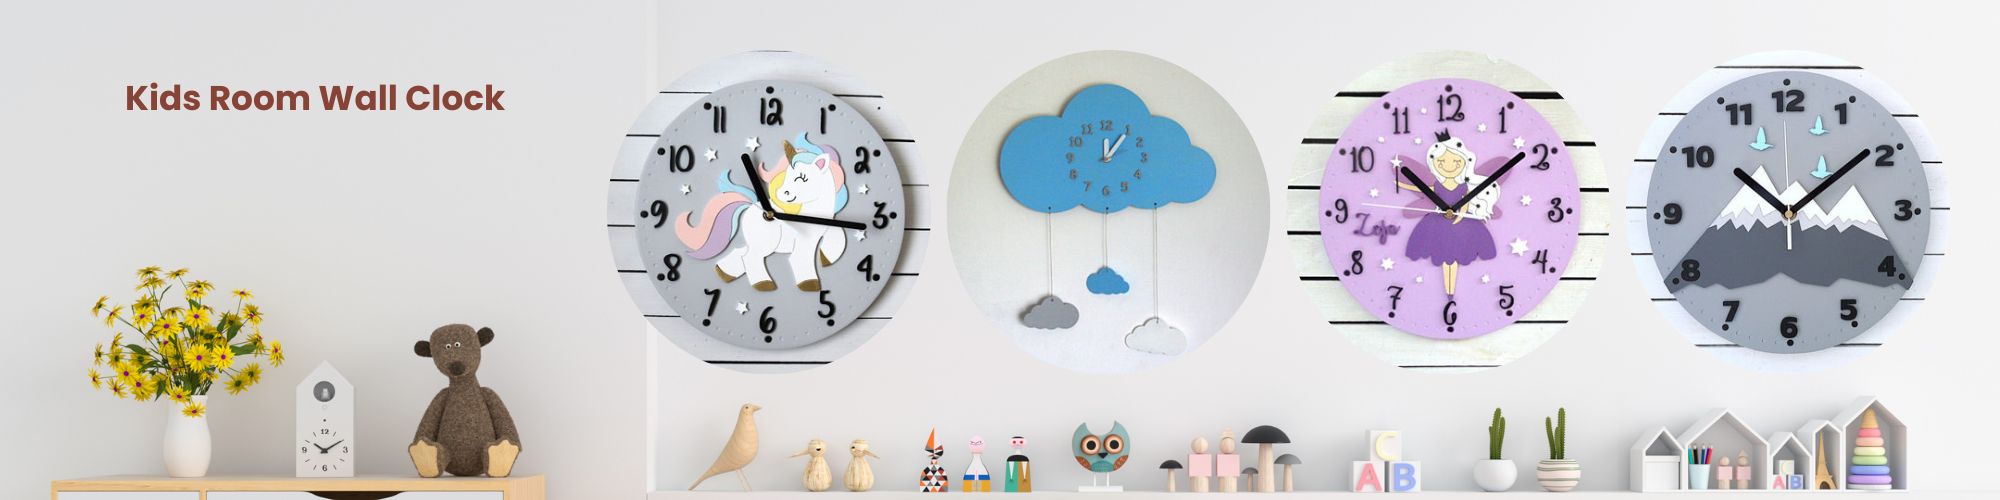 kids room wall clock 